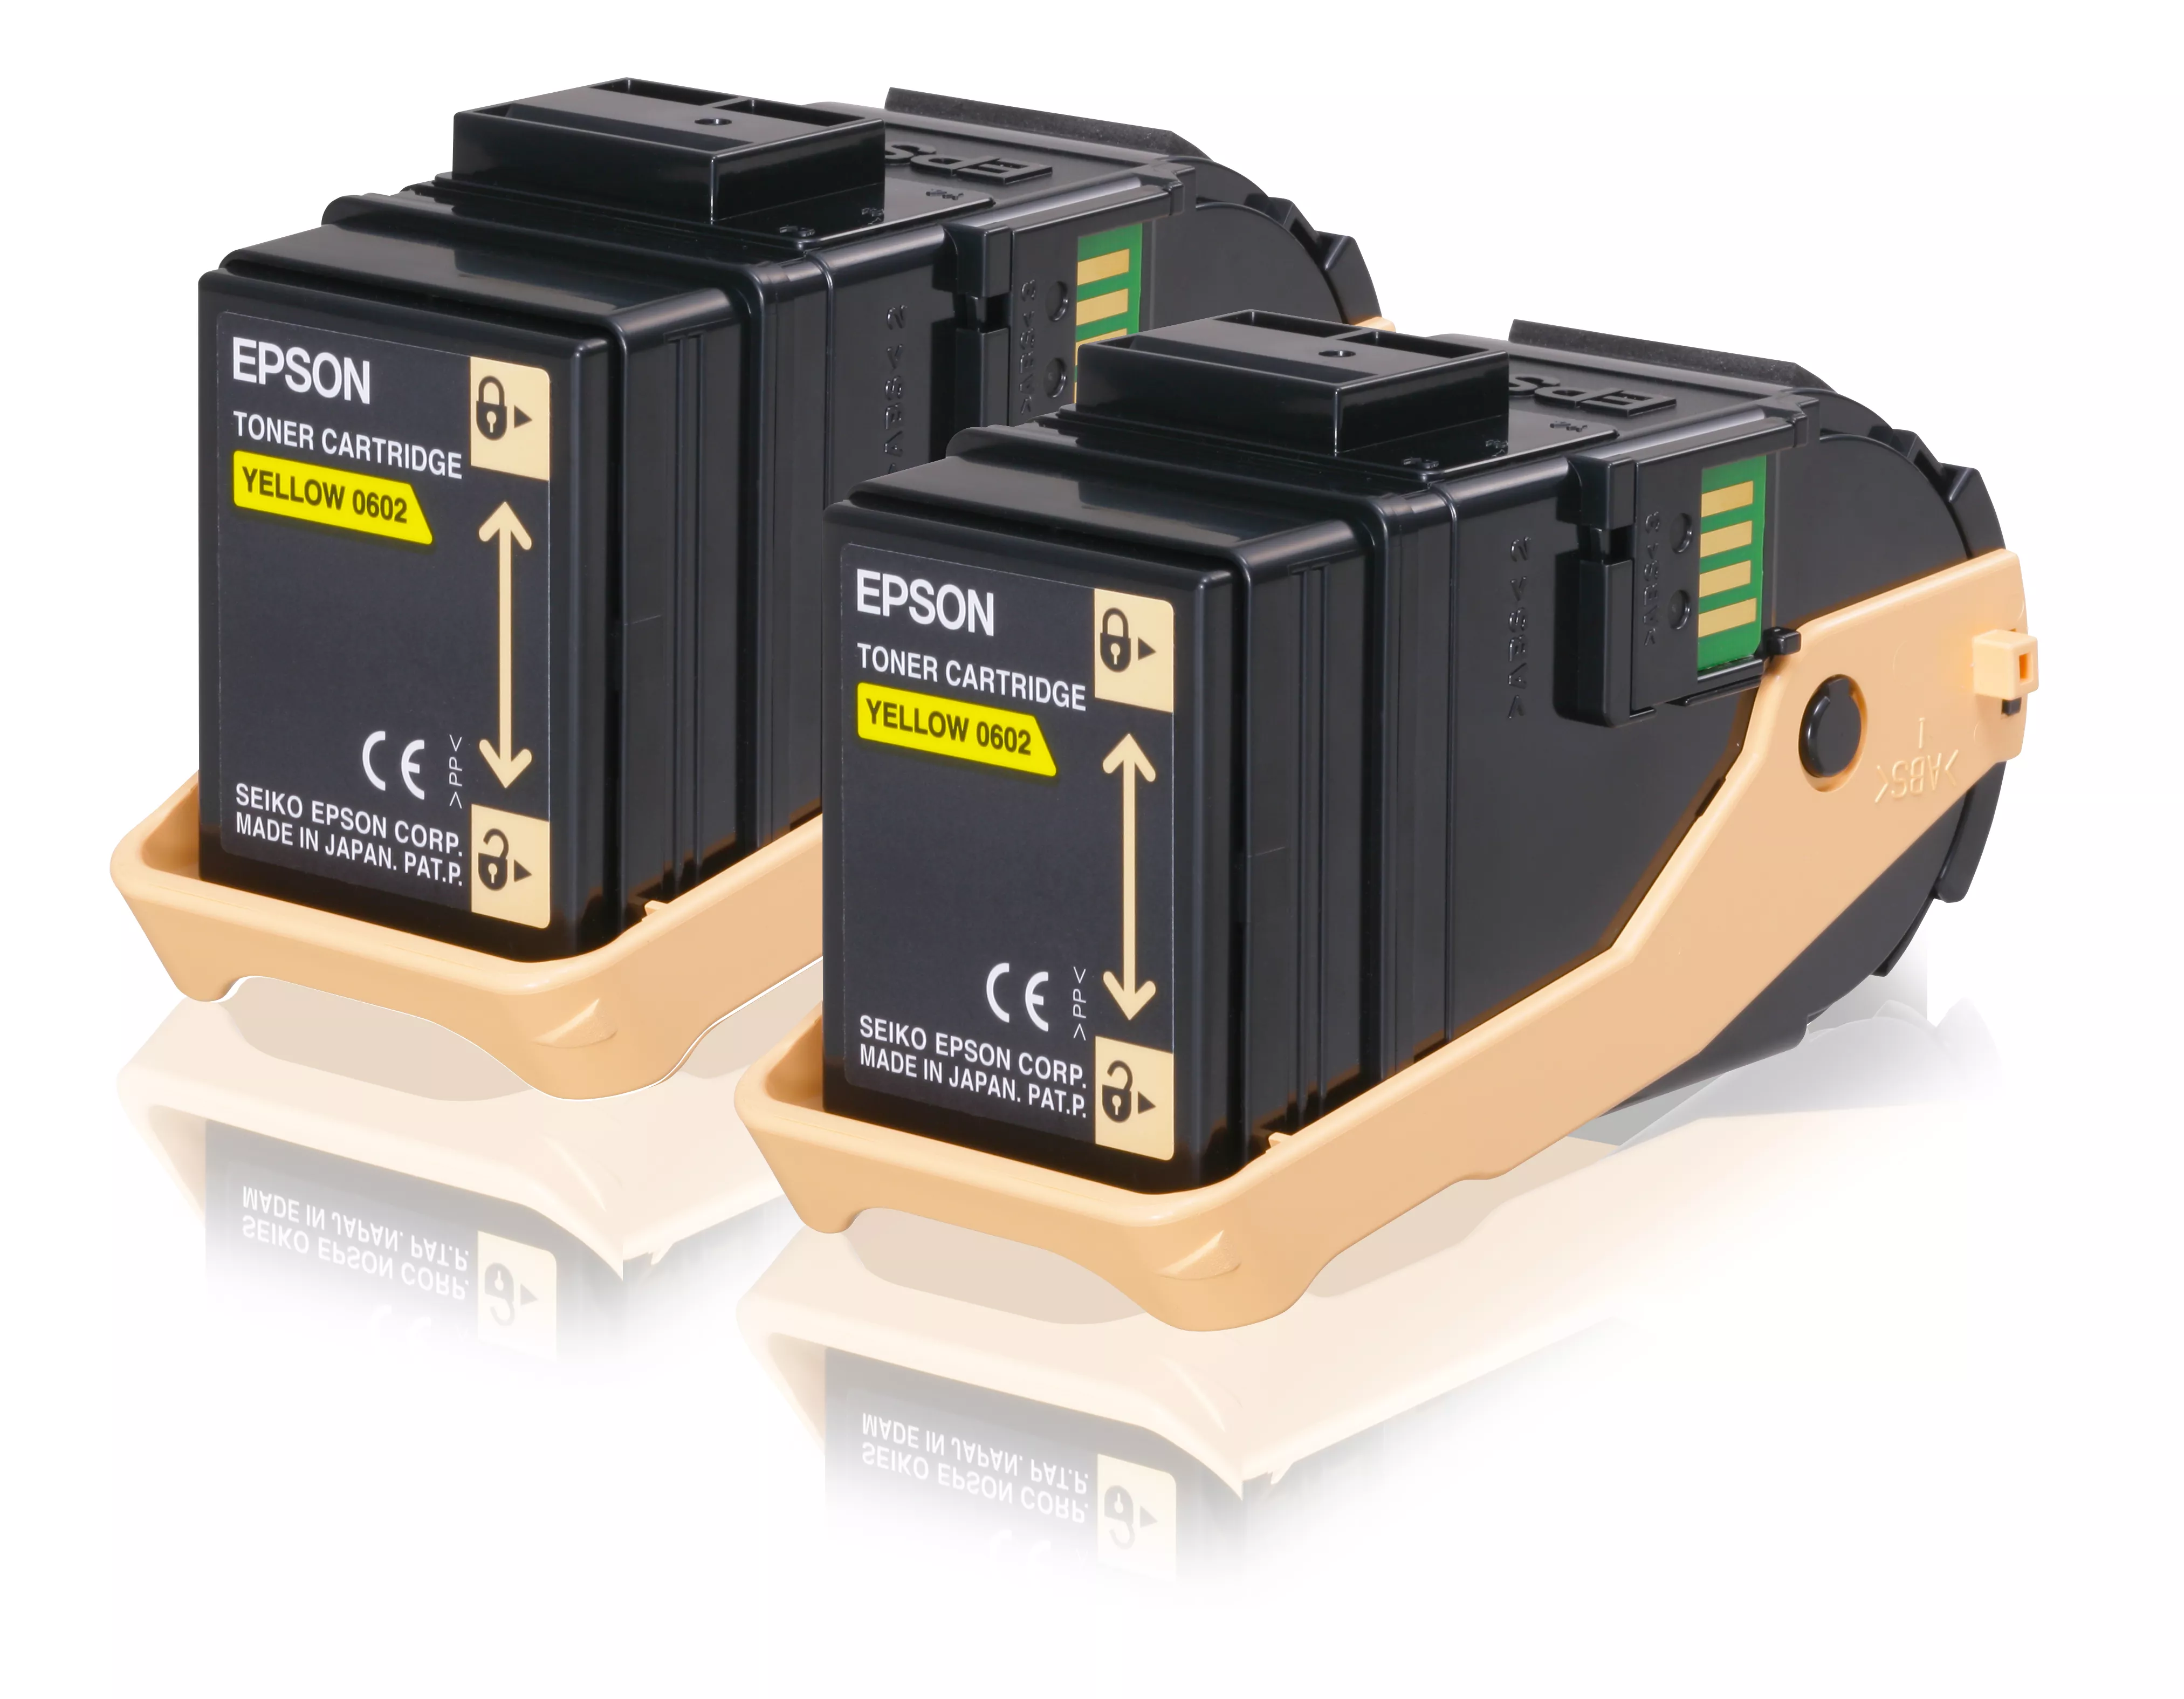 Achat EPSON AL-C9300N cartouche de toner jaune capacité et autres produits de la marque Epson